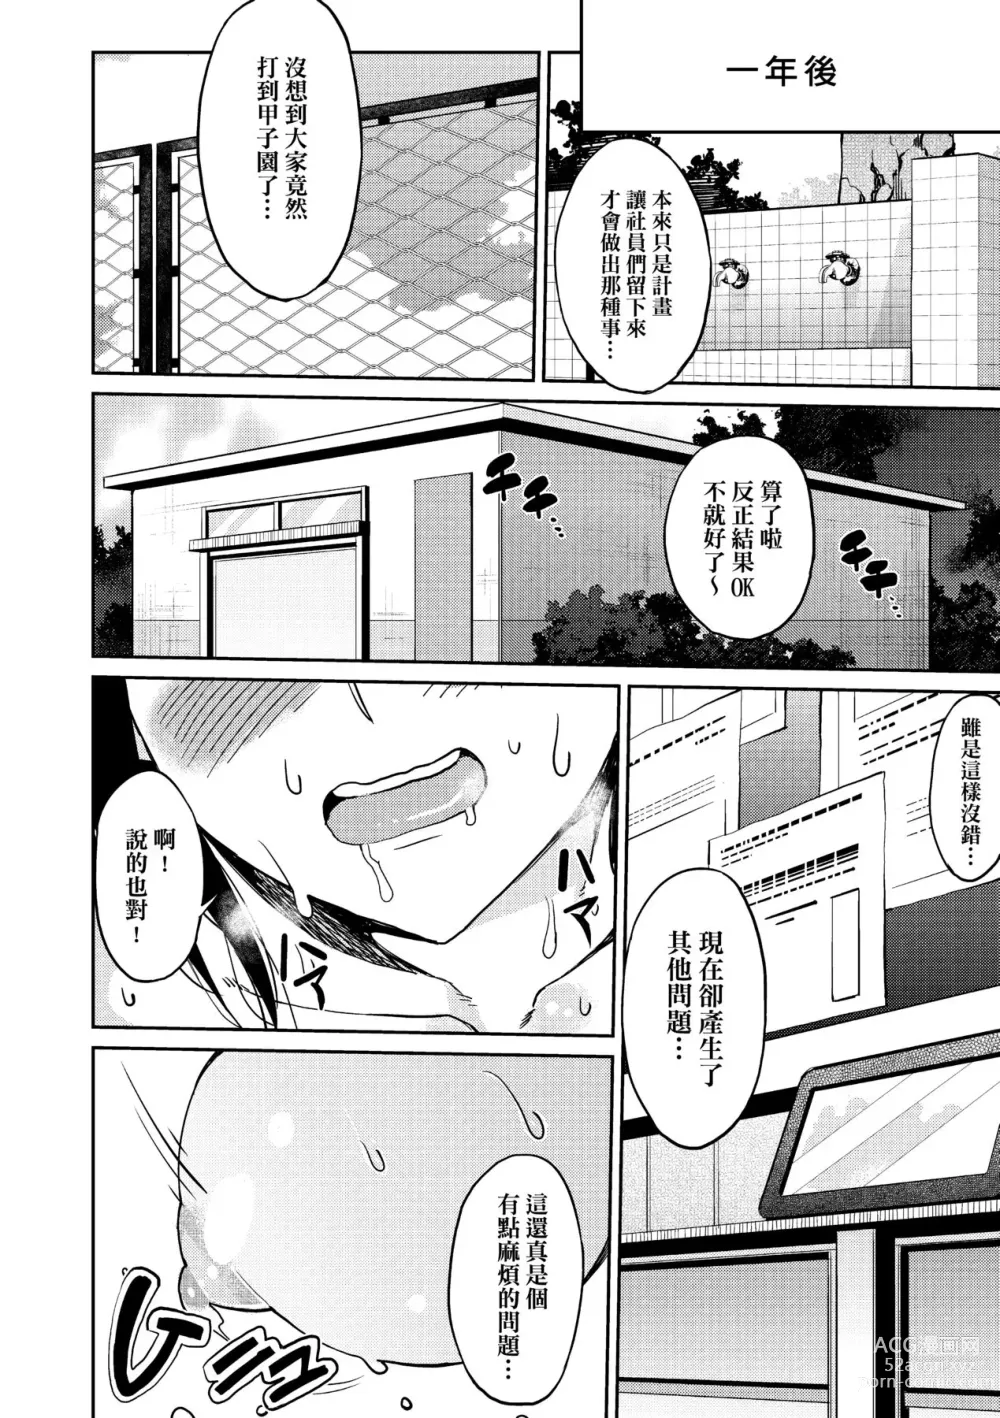 Page 195 of manga Kyou kara Kimi no Dorei (decensored)